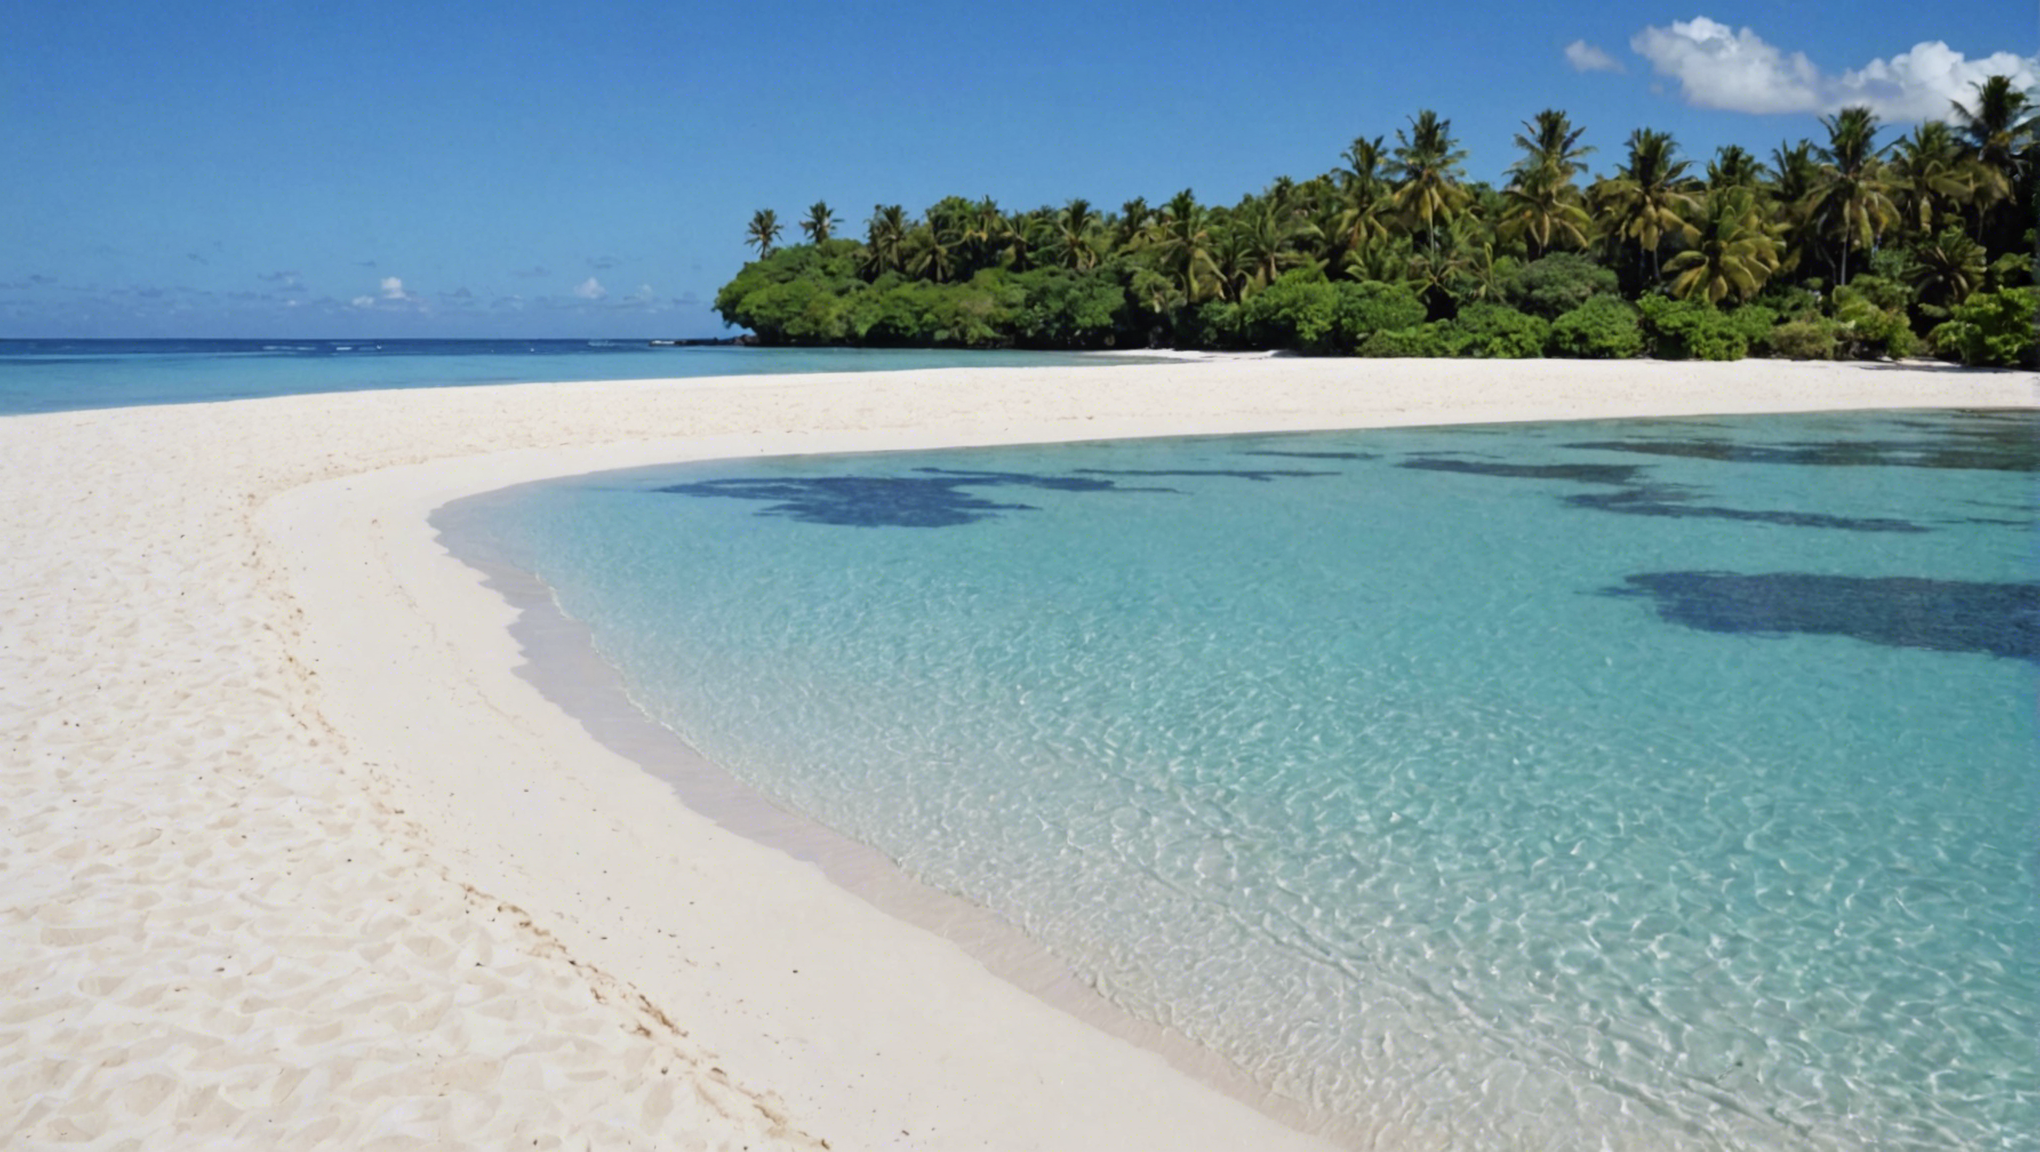 découvrez où trouver les plages de sable blanc idéales pour le farniente à tahiti, l'une des destinations de rêve pour des vacances relaxantes sous le soleil des îles du pacifique.